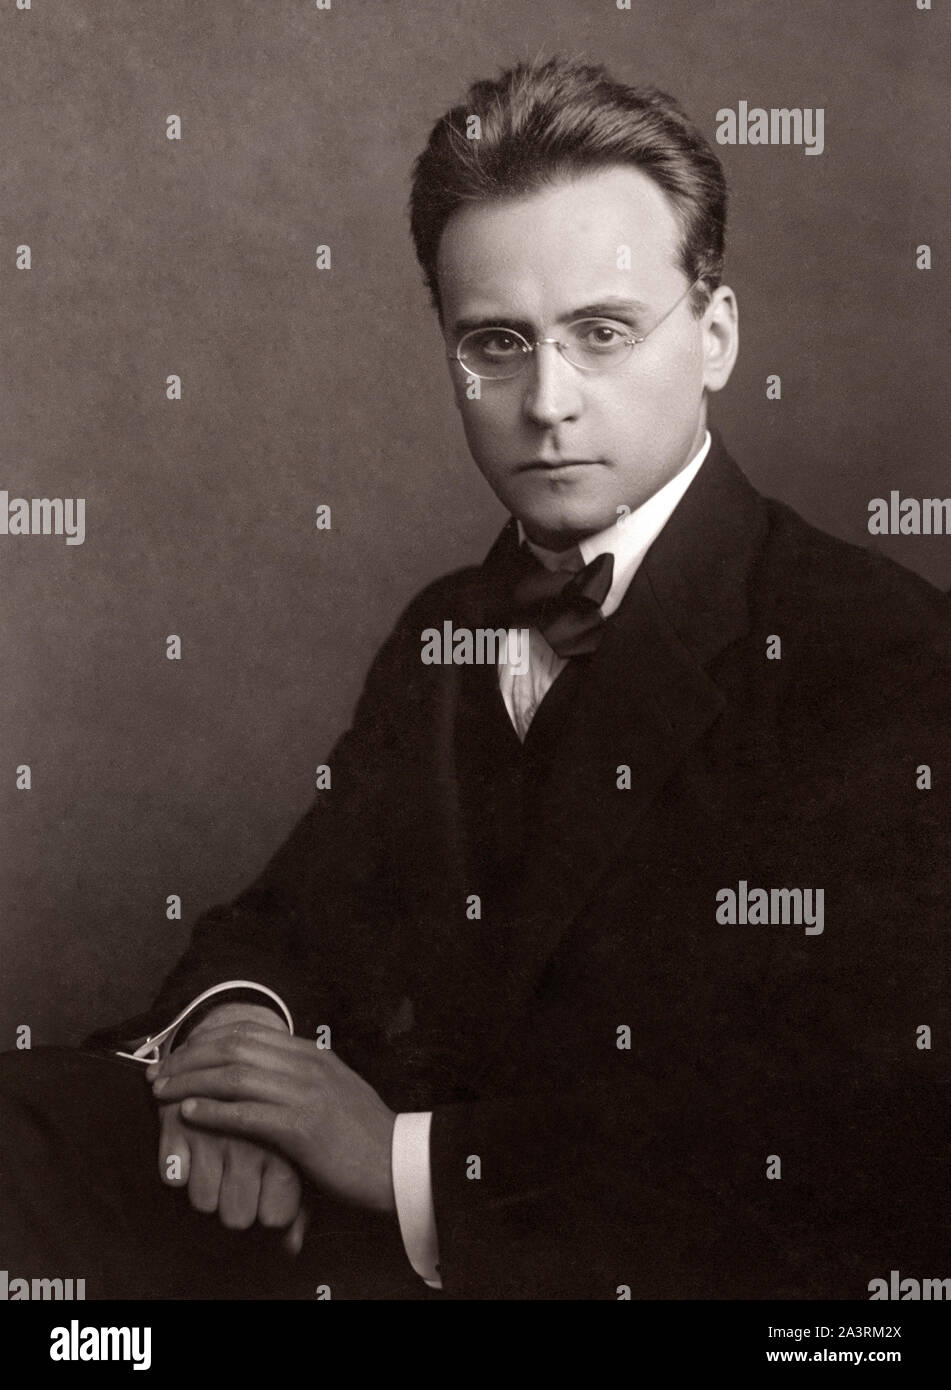 Anton Friedrich Wilhelm von Webern (1883-1945) war ein österreichischer Komponist und Dirigent. Stockfoto